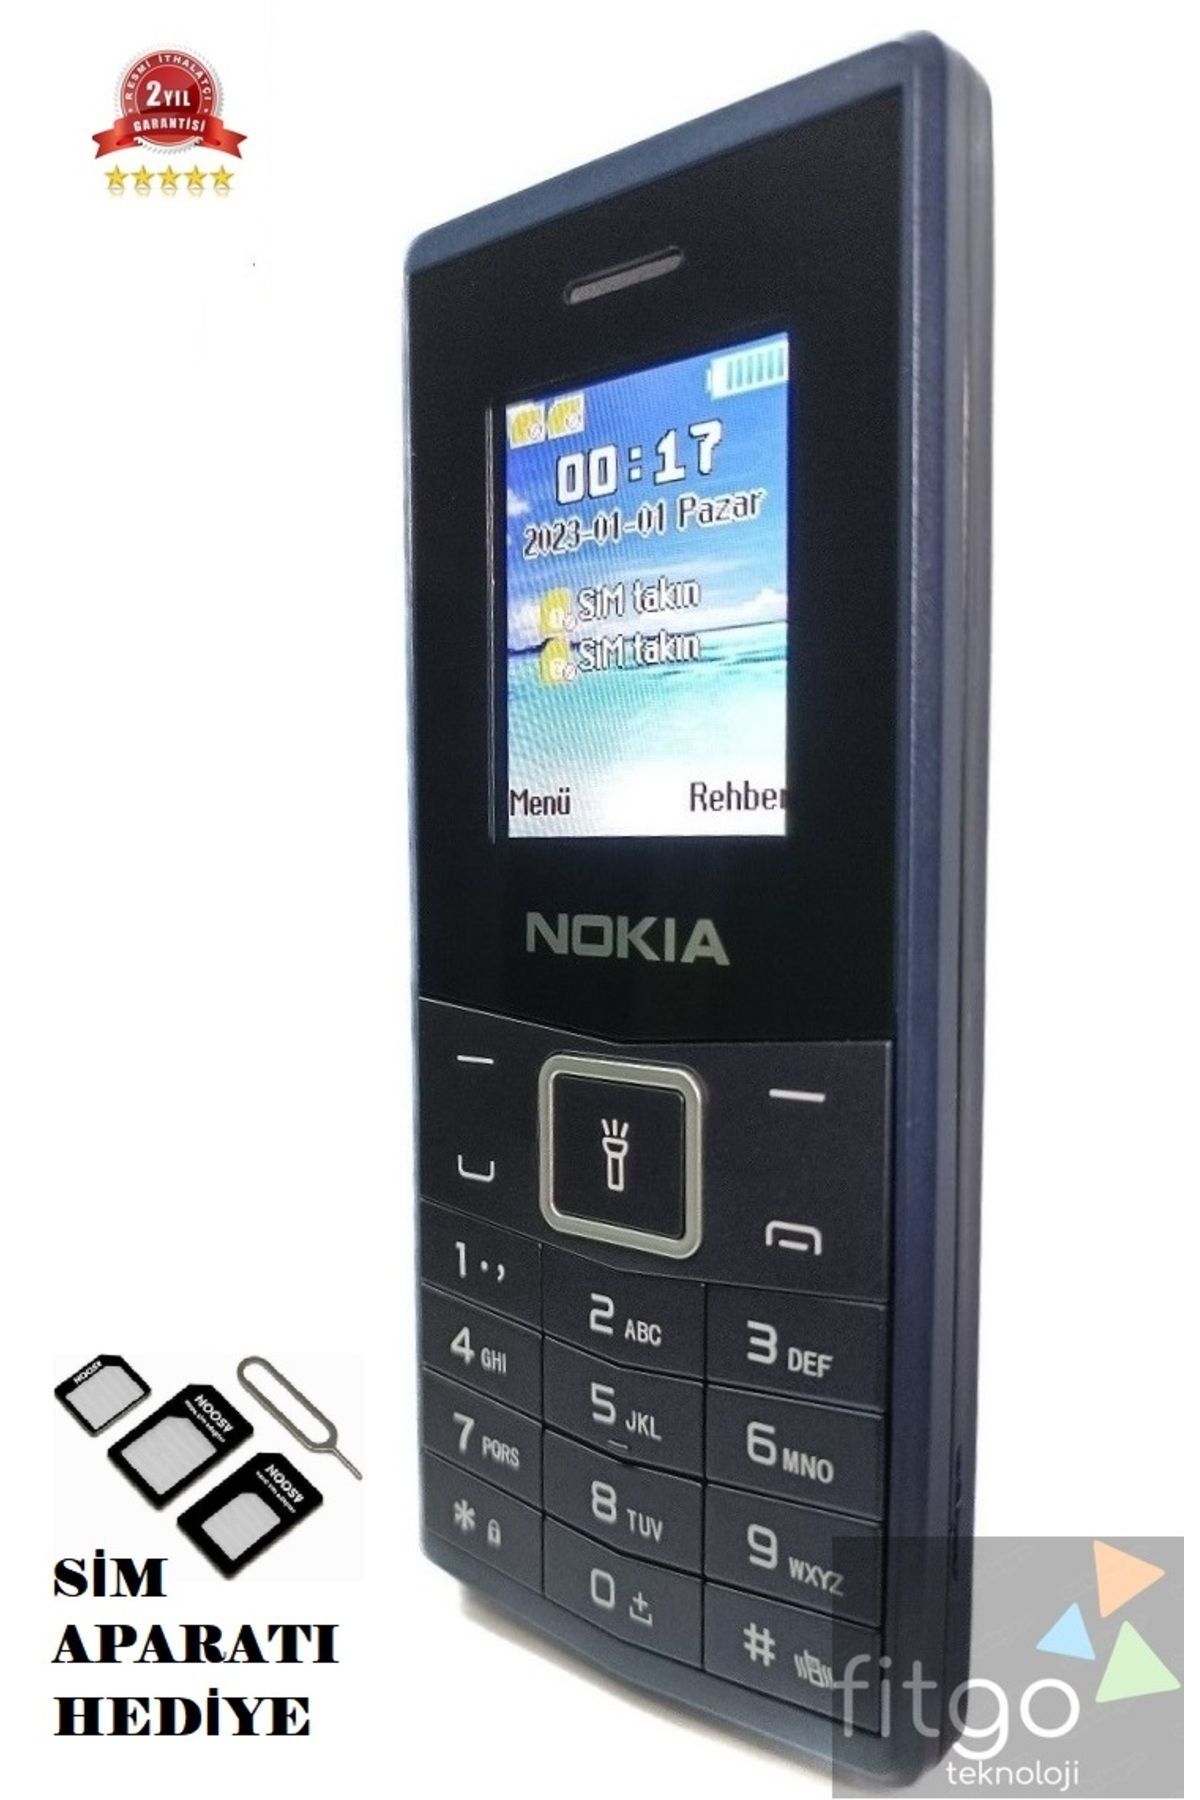 FİTGO Yeni Nesil Yüksek Batarya Gücüne Sahip Nokiaa 2500 Mah. Tuşlu Cep Telefonu Metalik Tuşlu Hızlı Arama